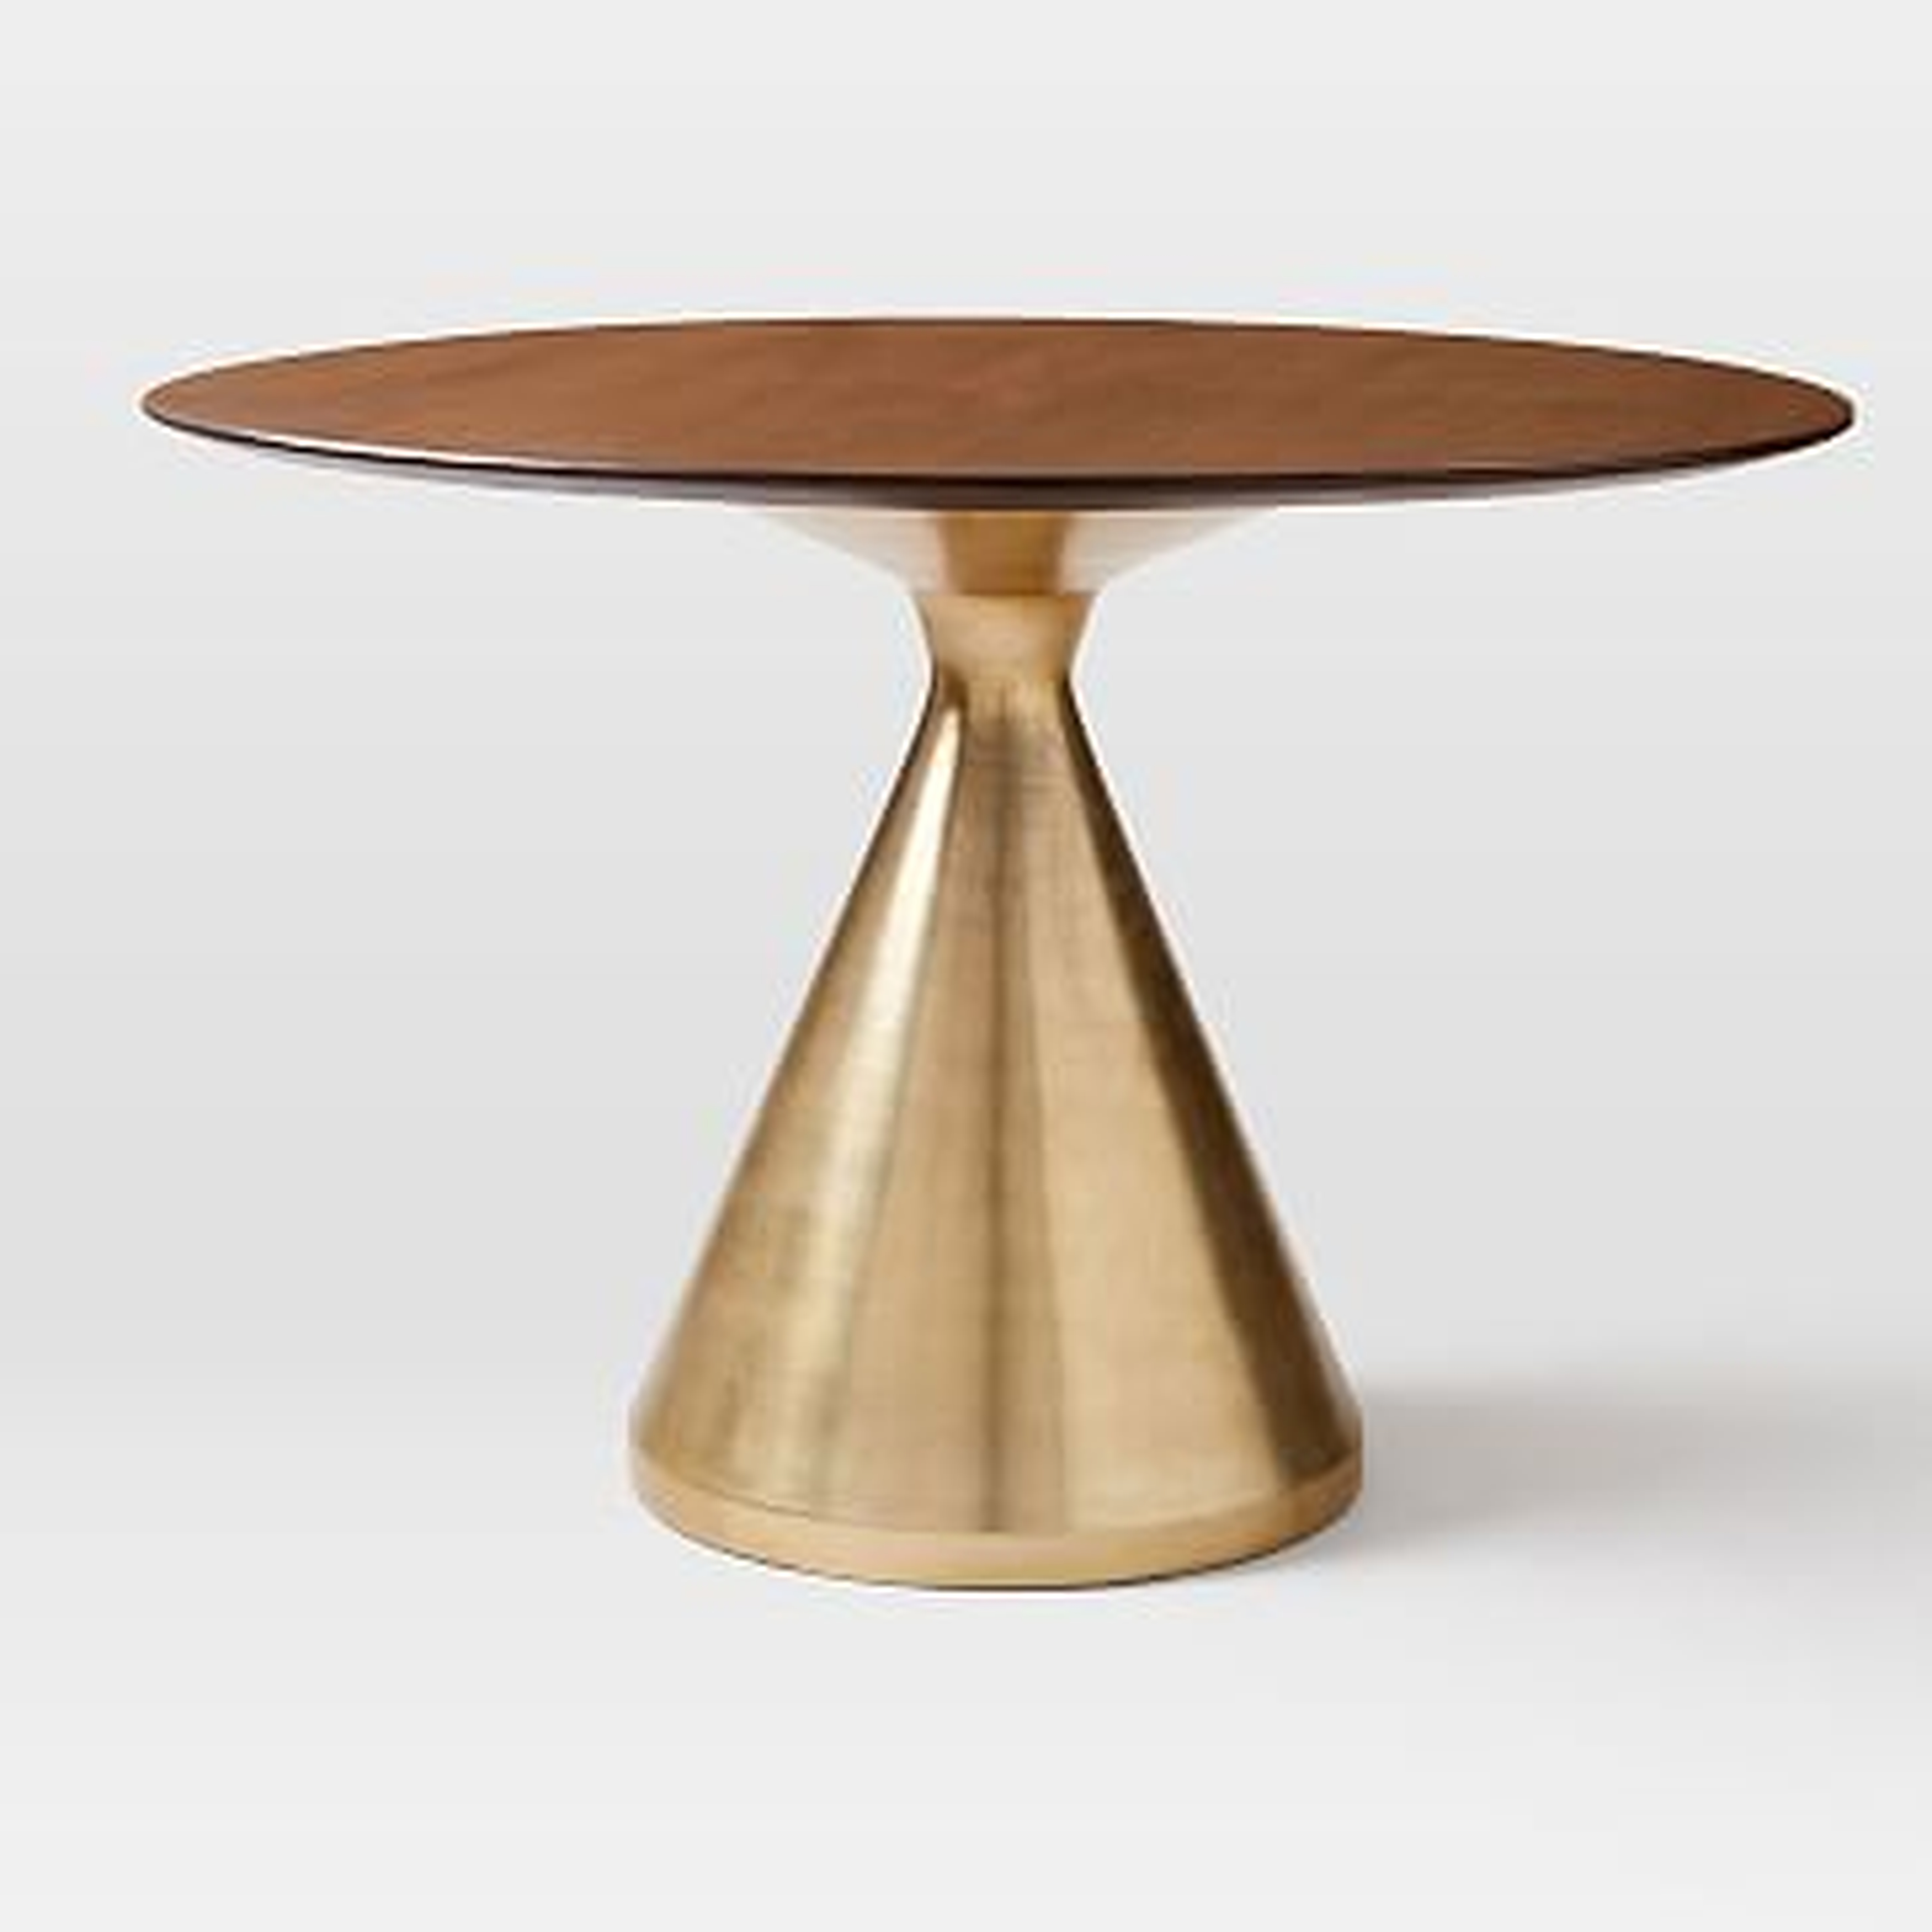 Silhouette Pedestal Dining Table, 44" Round, Dark Walnut - West Elm